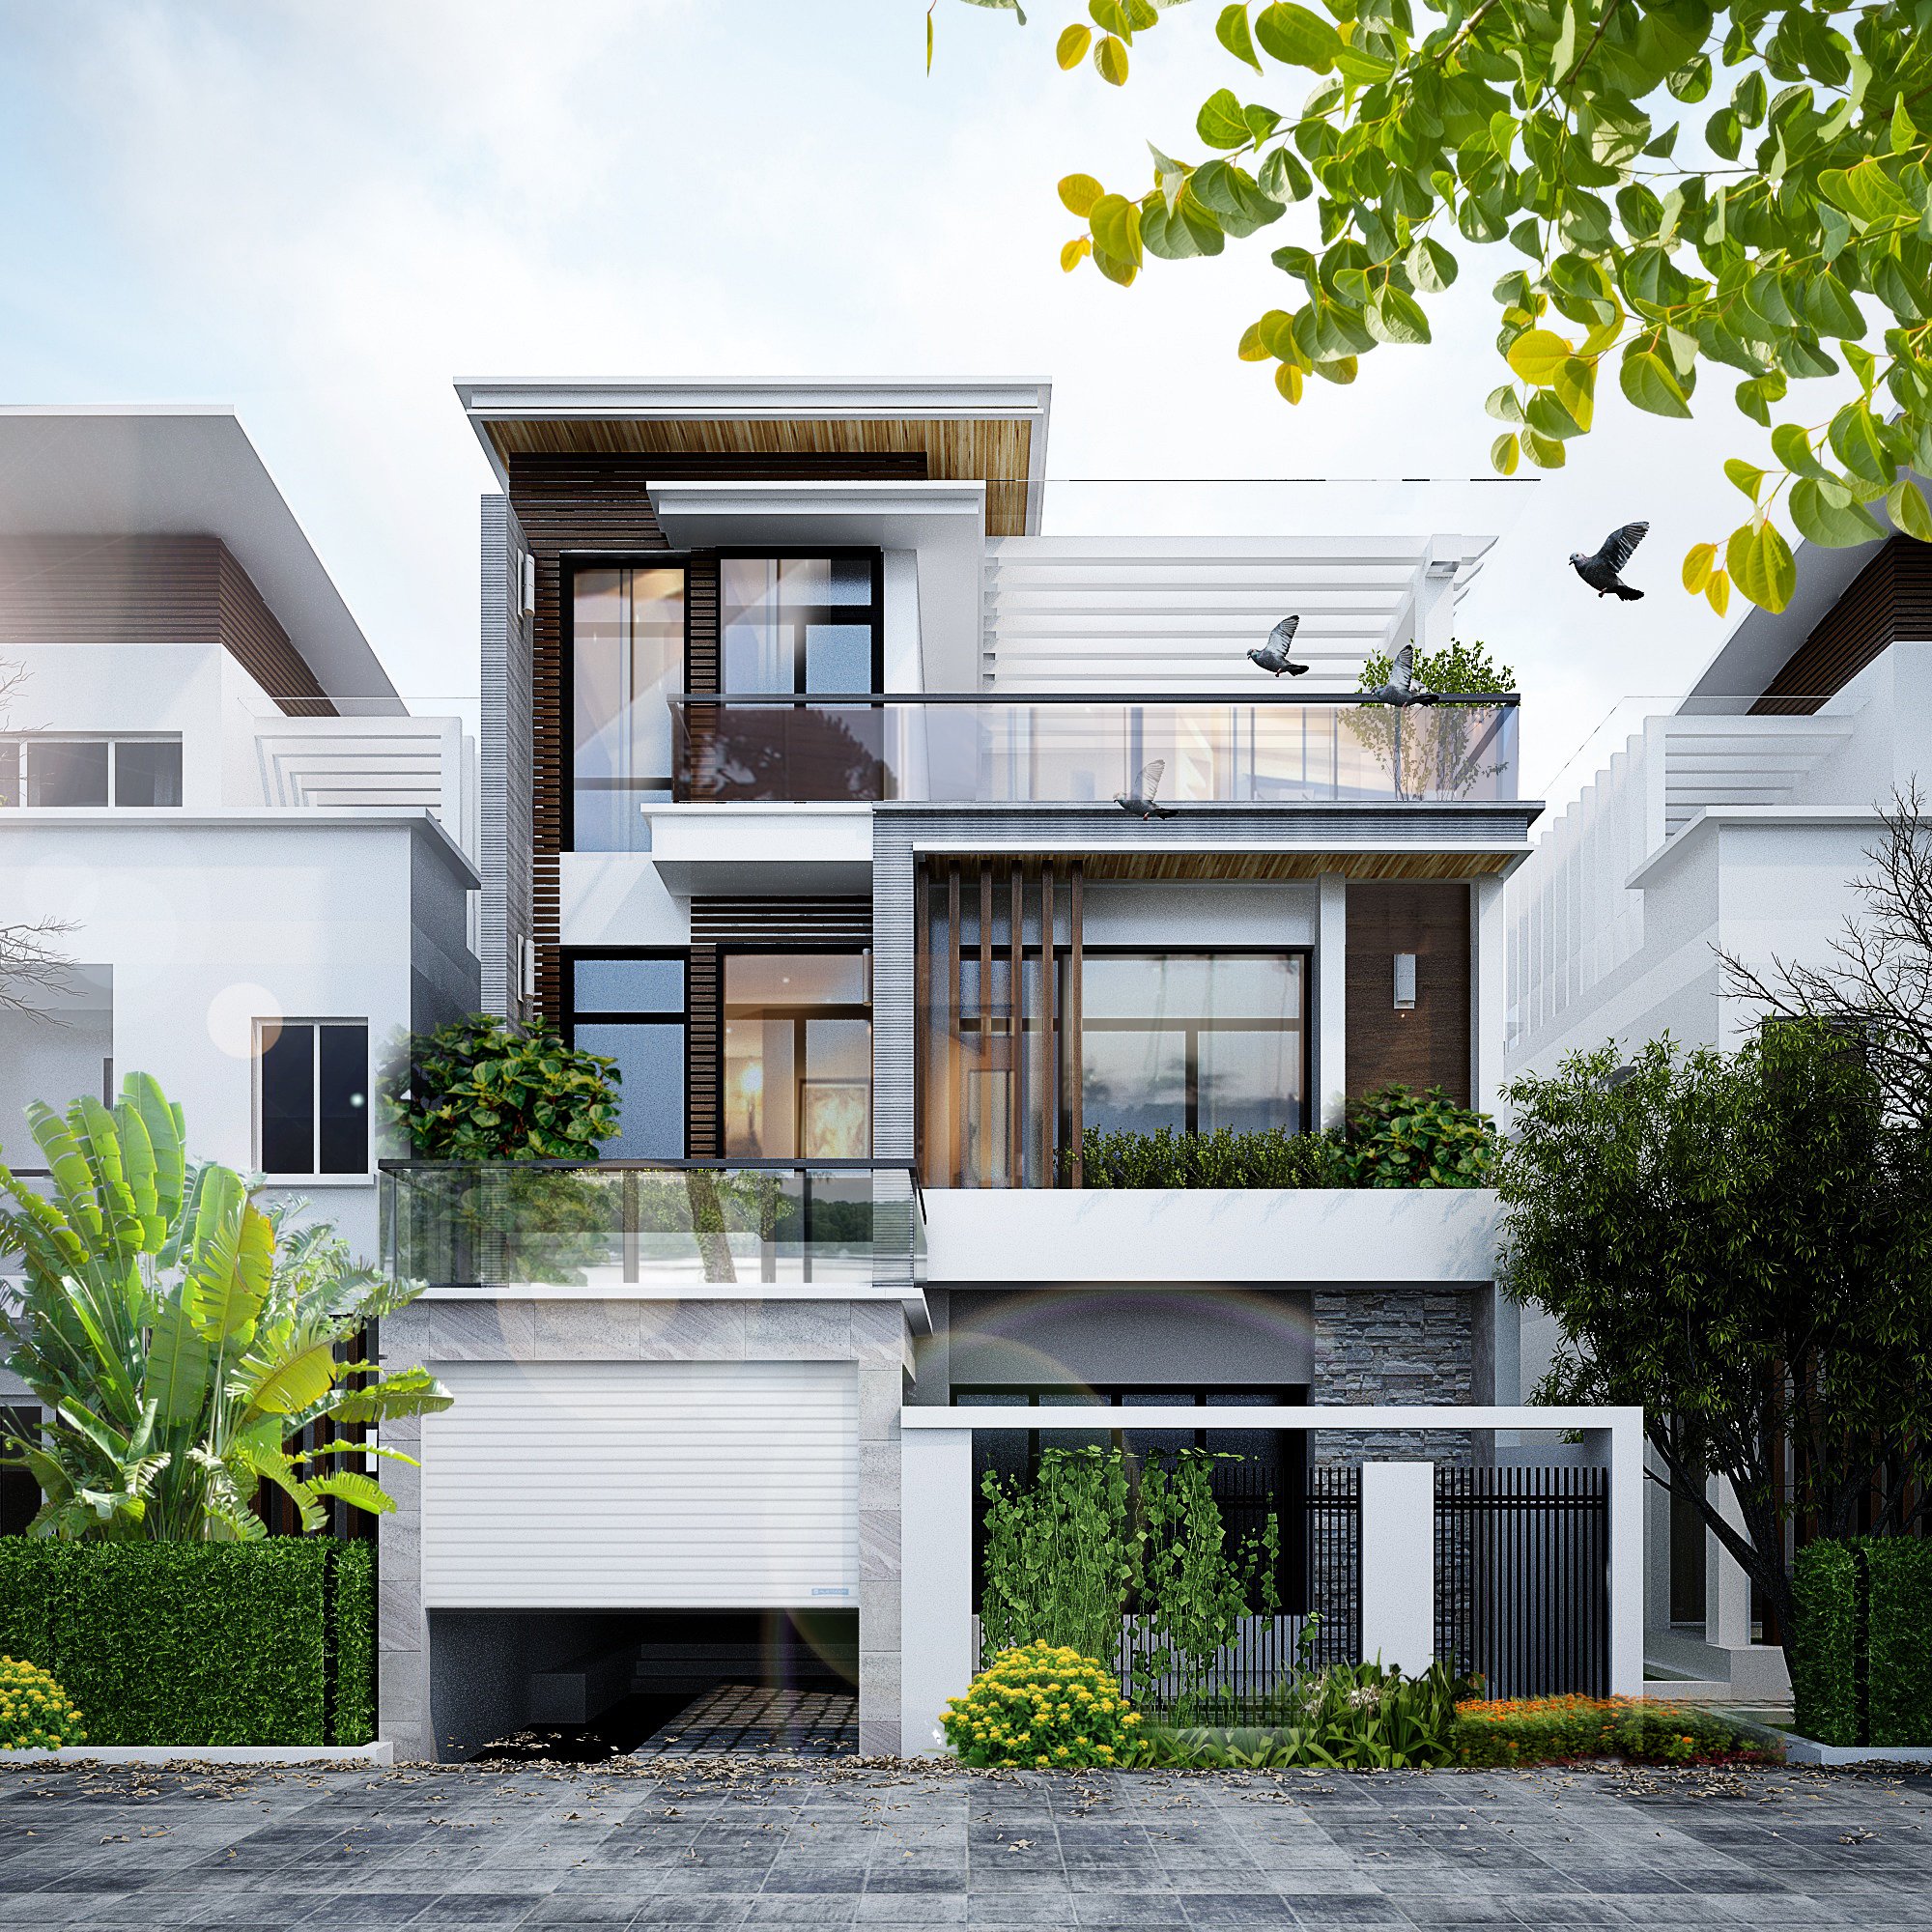 Thiết kế kiểu nhà vườn cấp 4 mái Thái đẹp xuất sắc tại Phú Thọ